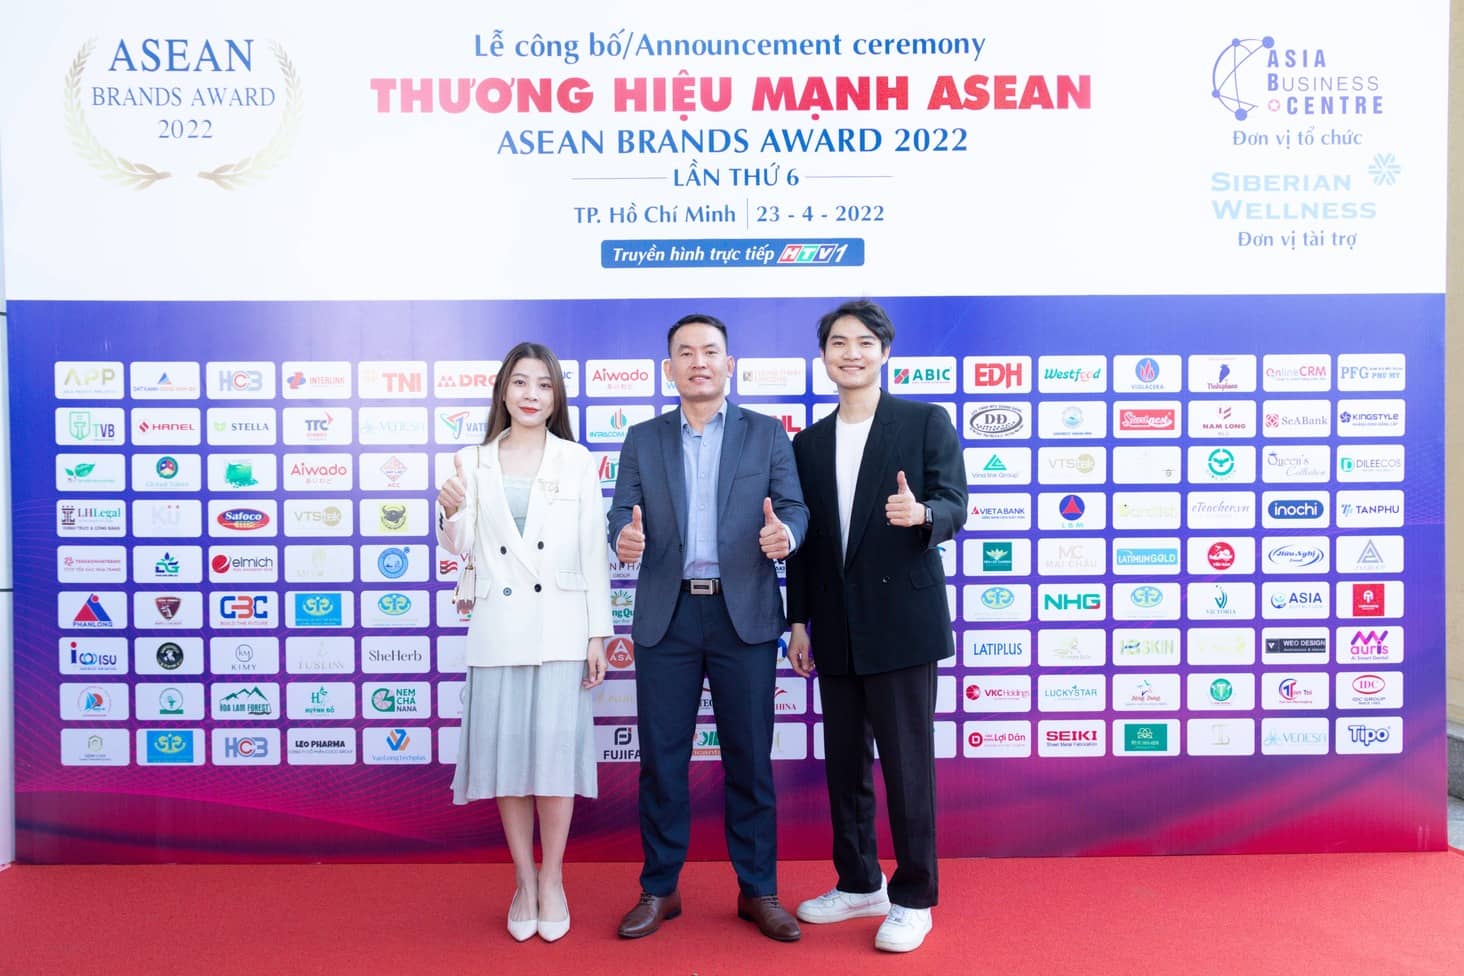 OnlineCRM nhận giải thưởng TOP 10 thương hiệu mạnh ASEAN 2022